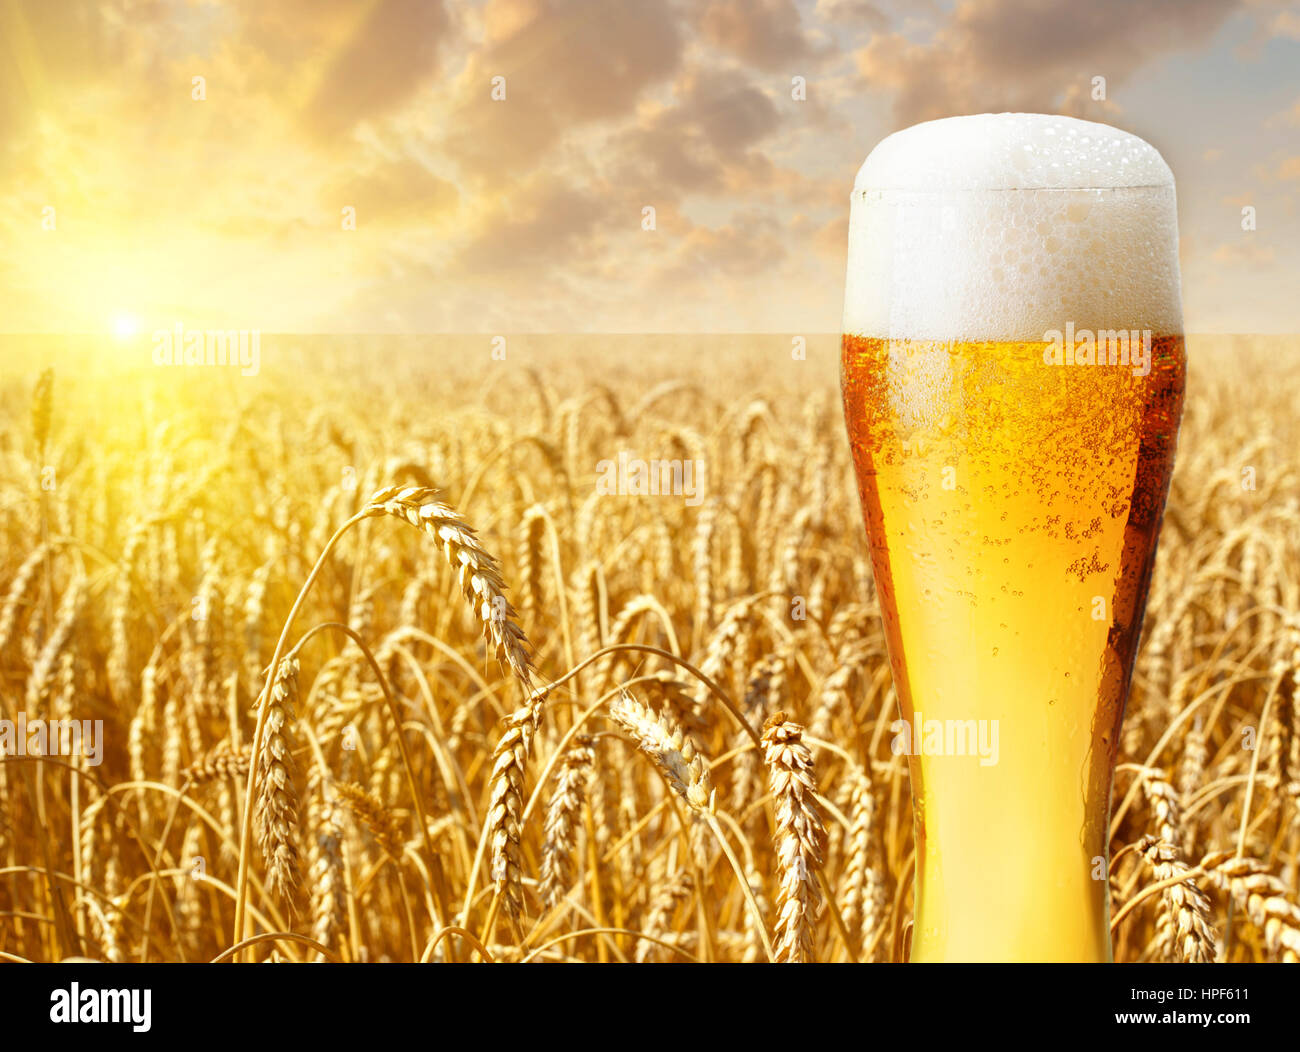 Verre de bière contre champ de blé et le coucher du soleil. Bière légère en verre avec un paysage d'été sur l'arrière-plan. La bière et le champ de blé Banque D'Images